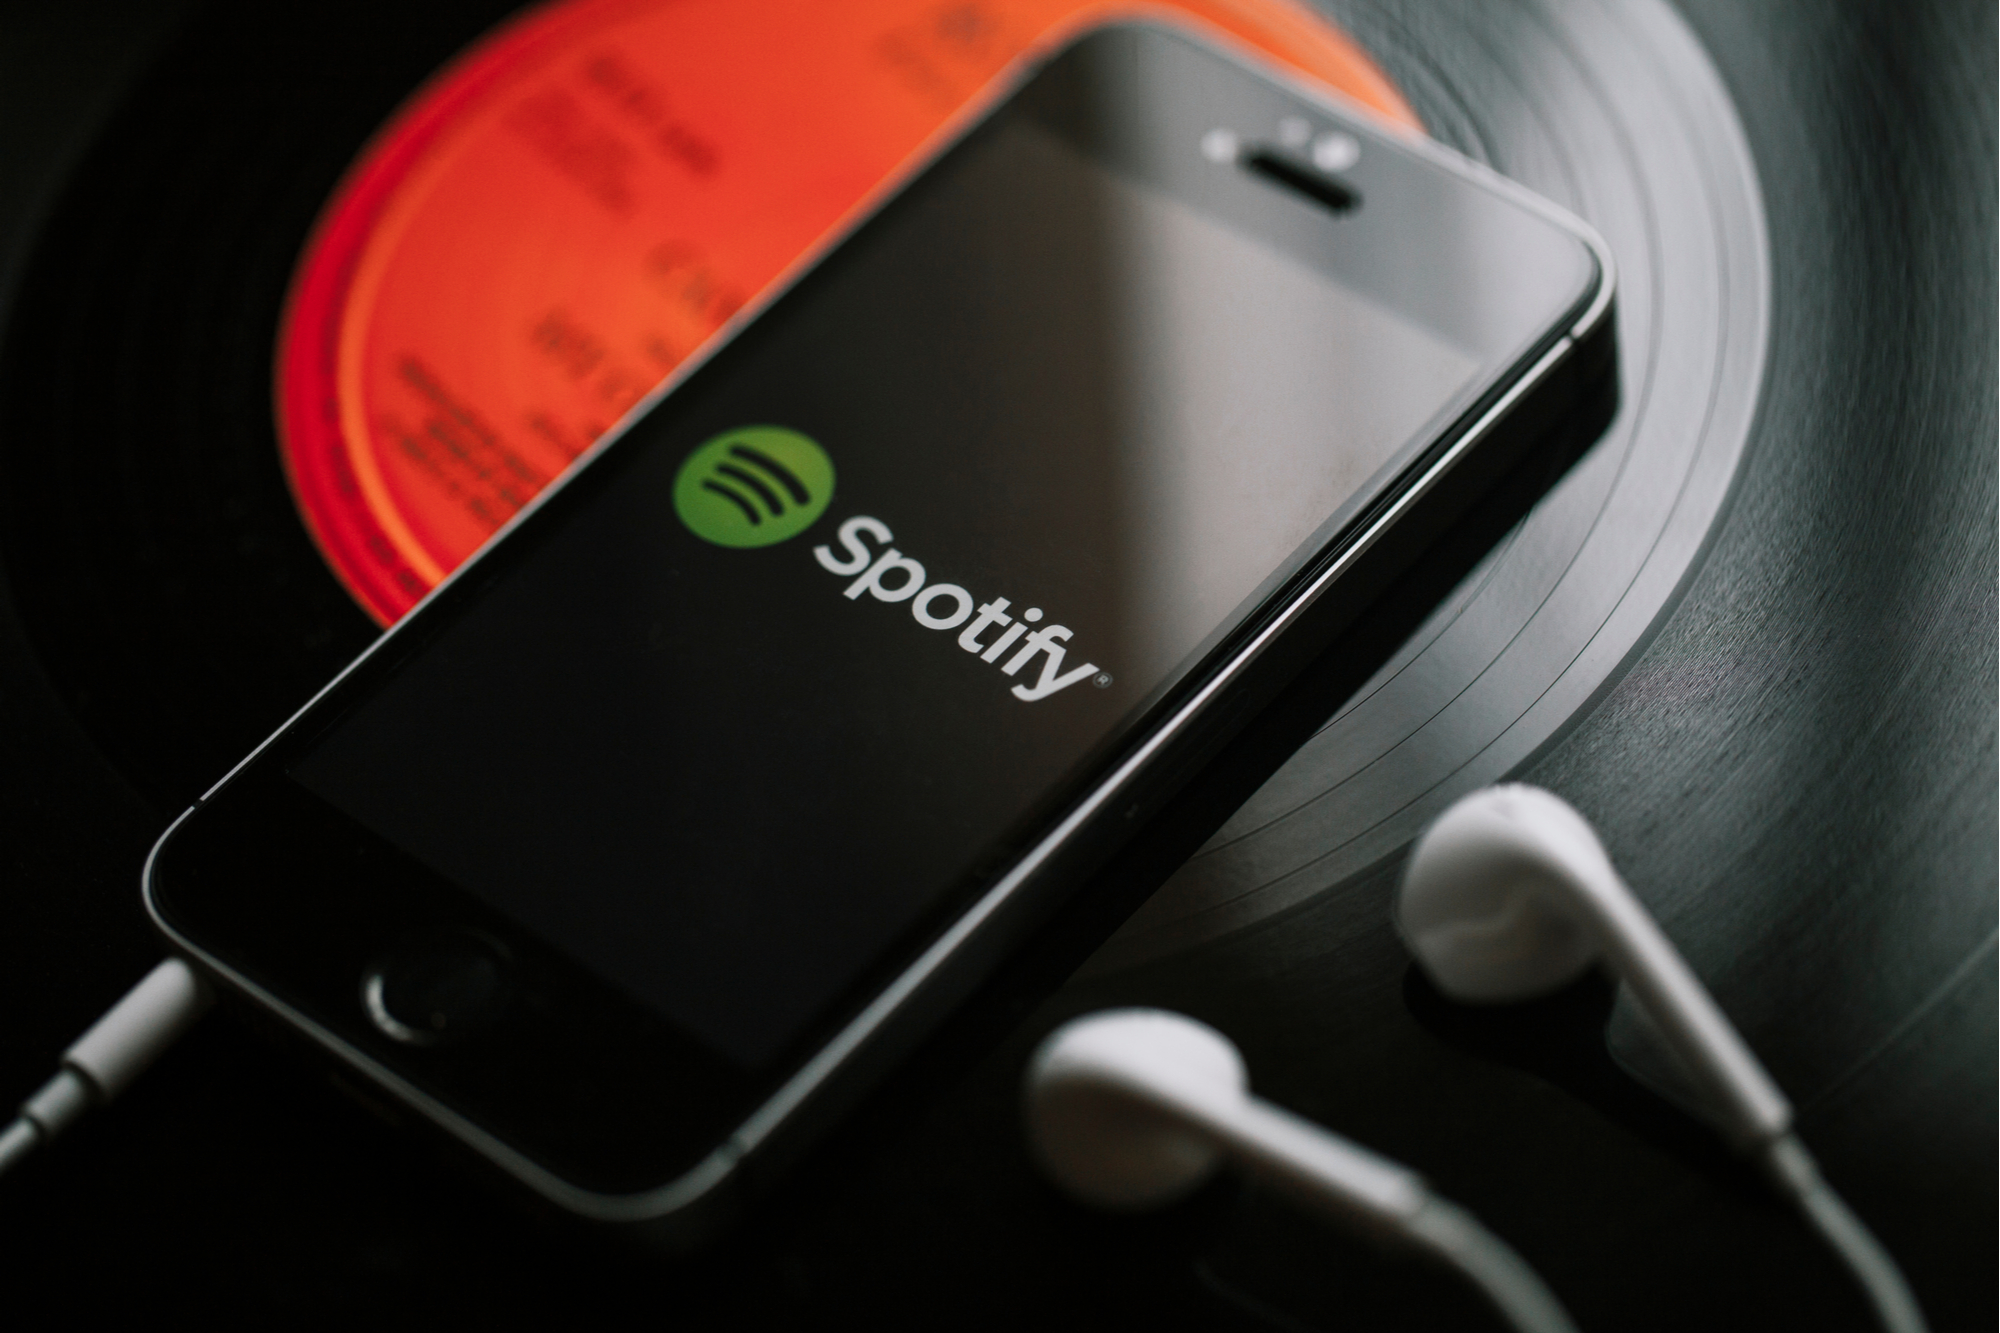 L'app Spotify pourra bientôt lire les fichiers stockés sur votre smartphone